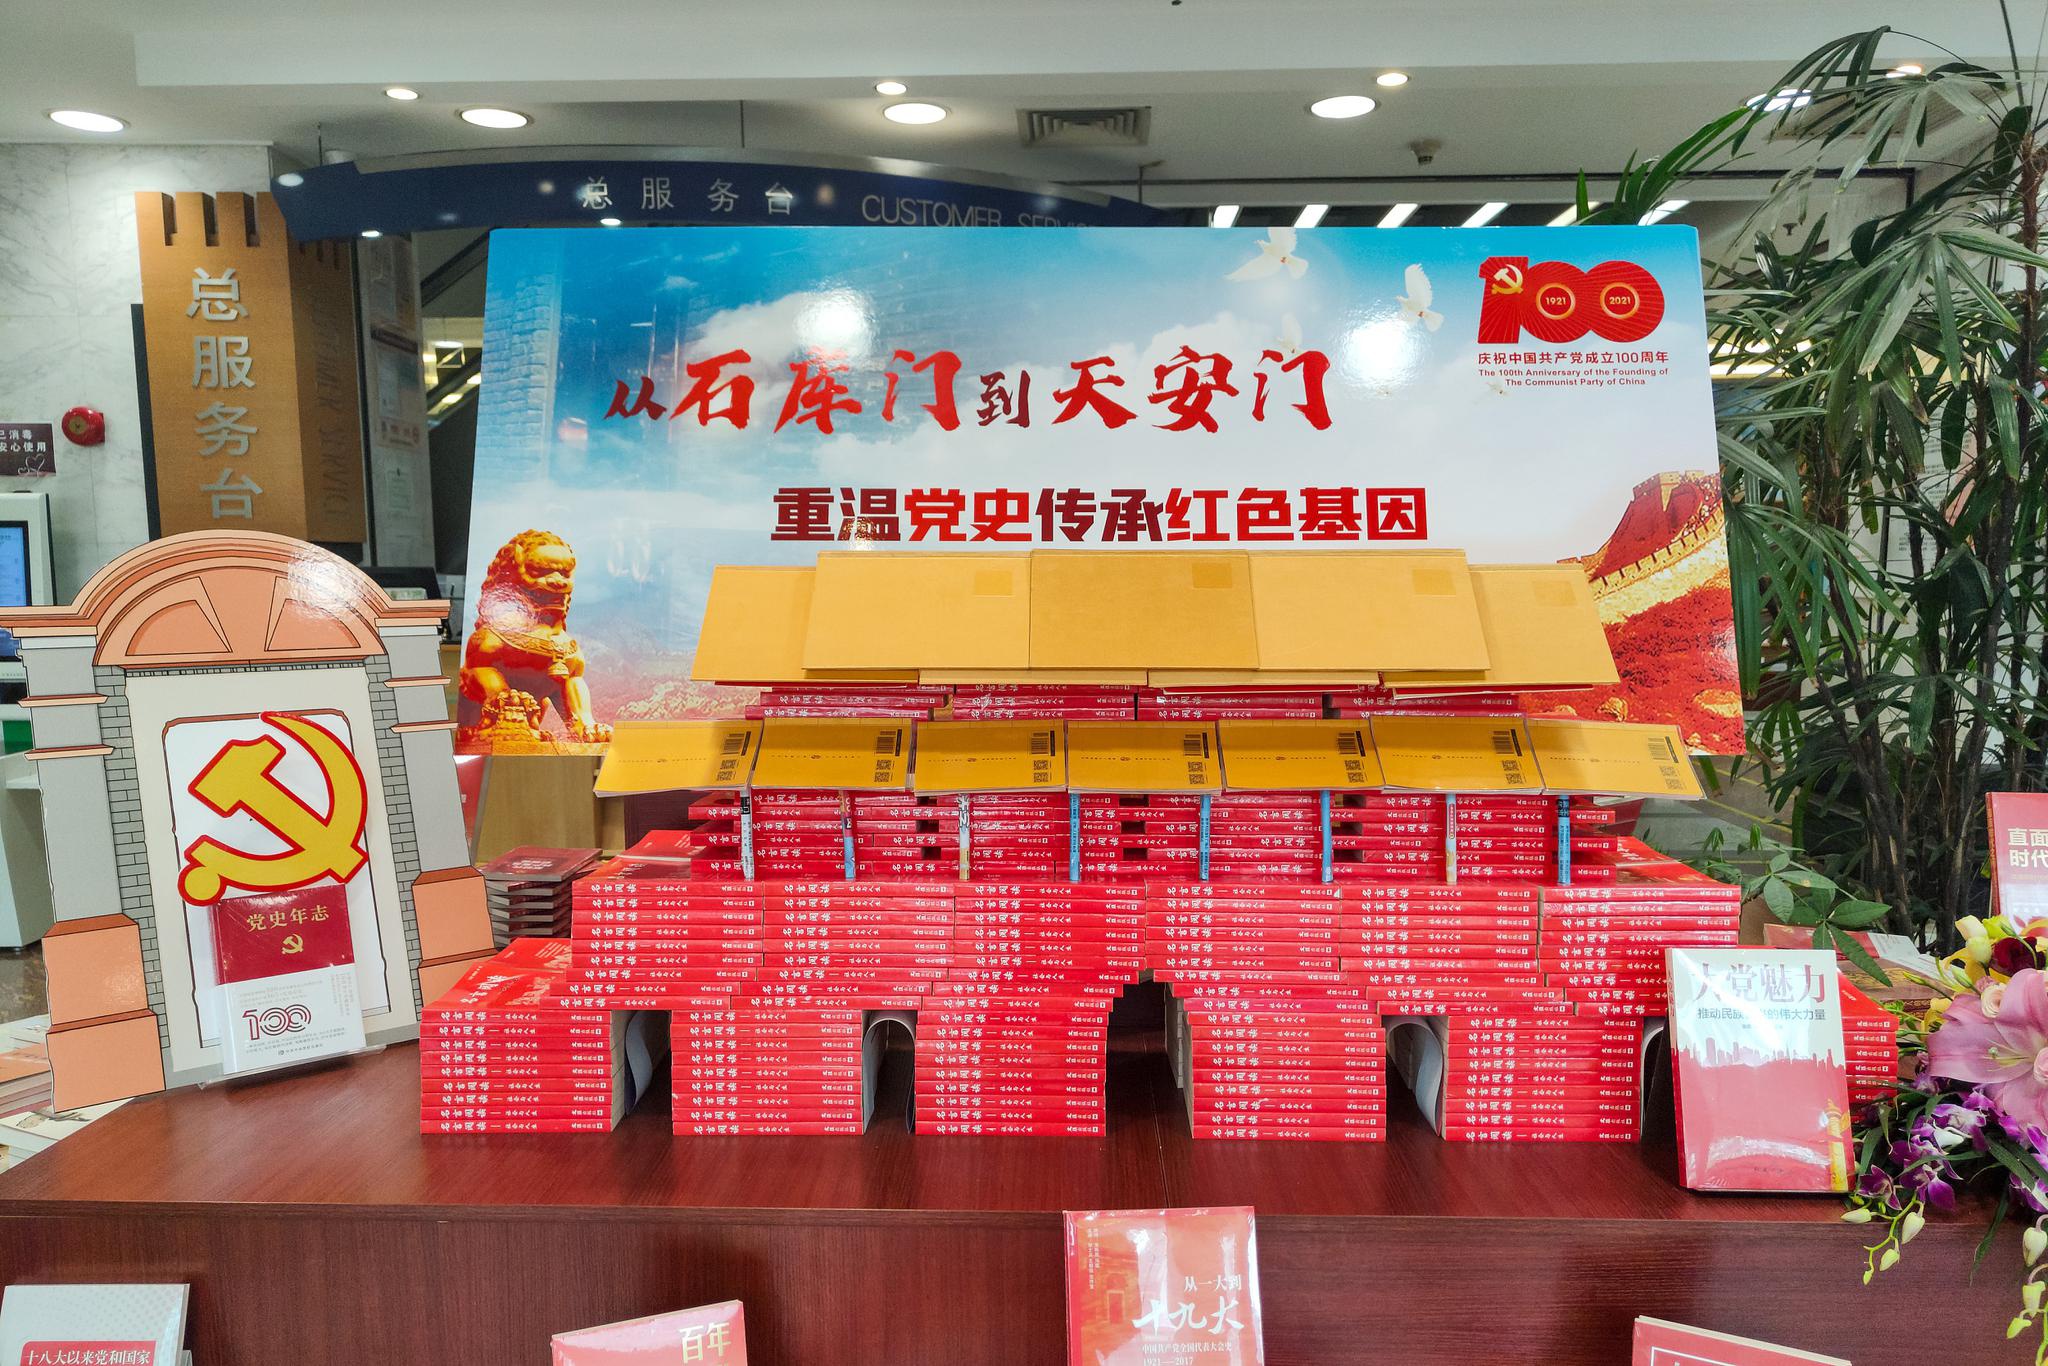 上海市促进全民阅读联盟成立，为申城书香添砖加码